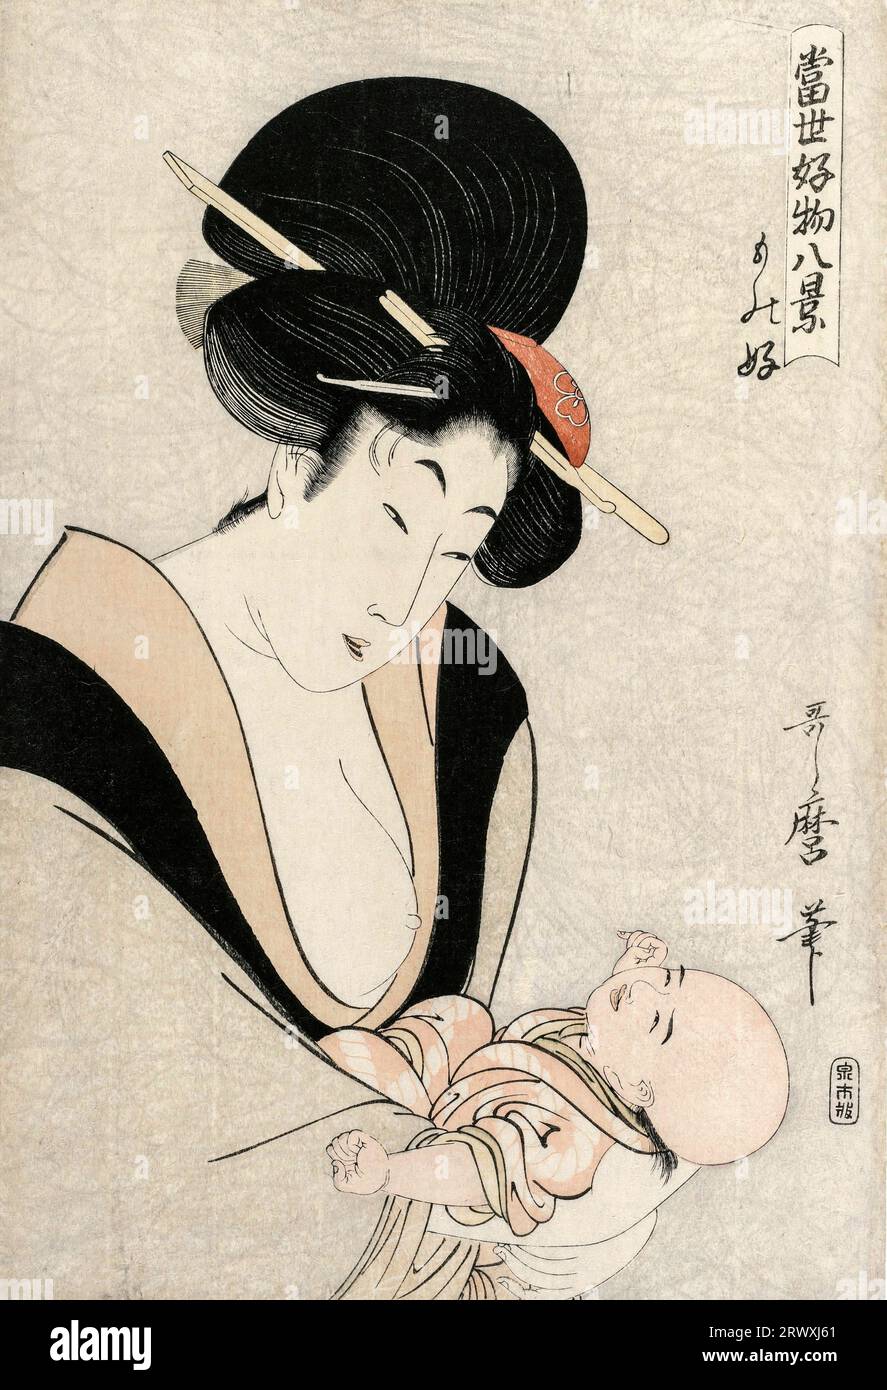 Friand of Things de la série huit vues de Favorite Things of Today's World de Kitagawa Utamaro (c. 1753-1806), estampe sur bois couleur, fin des années 1790 Banque D'Images